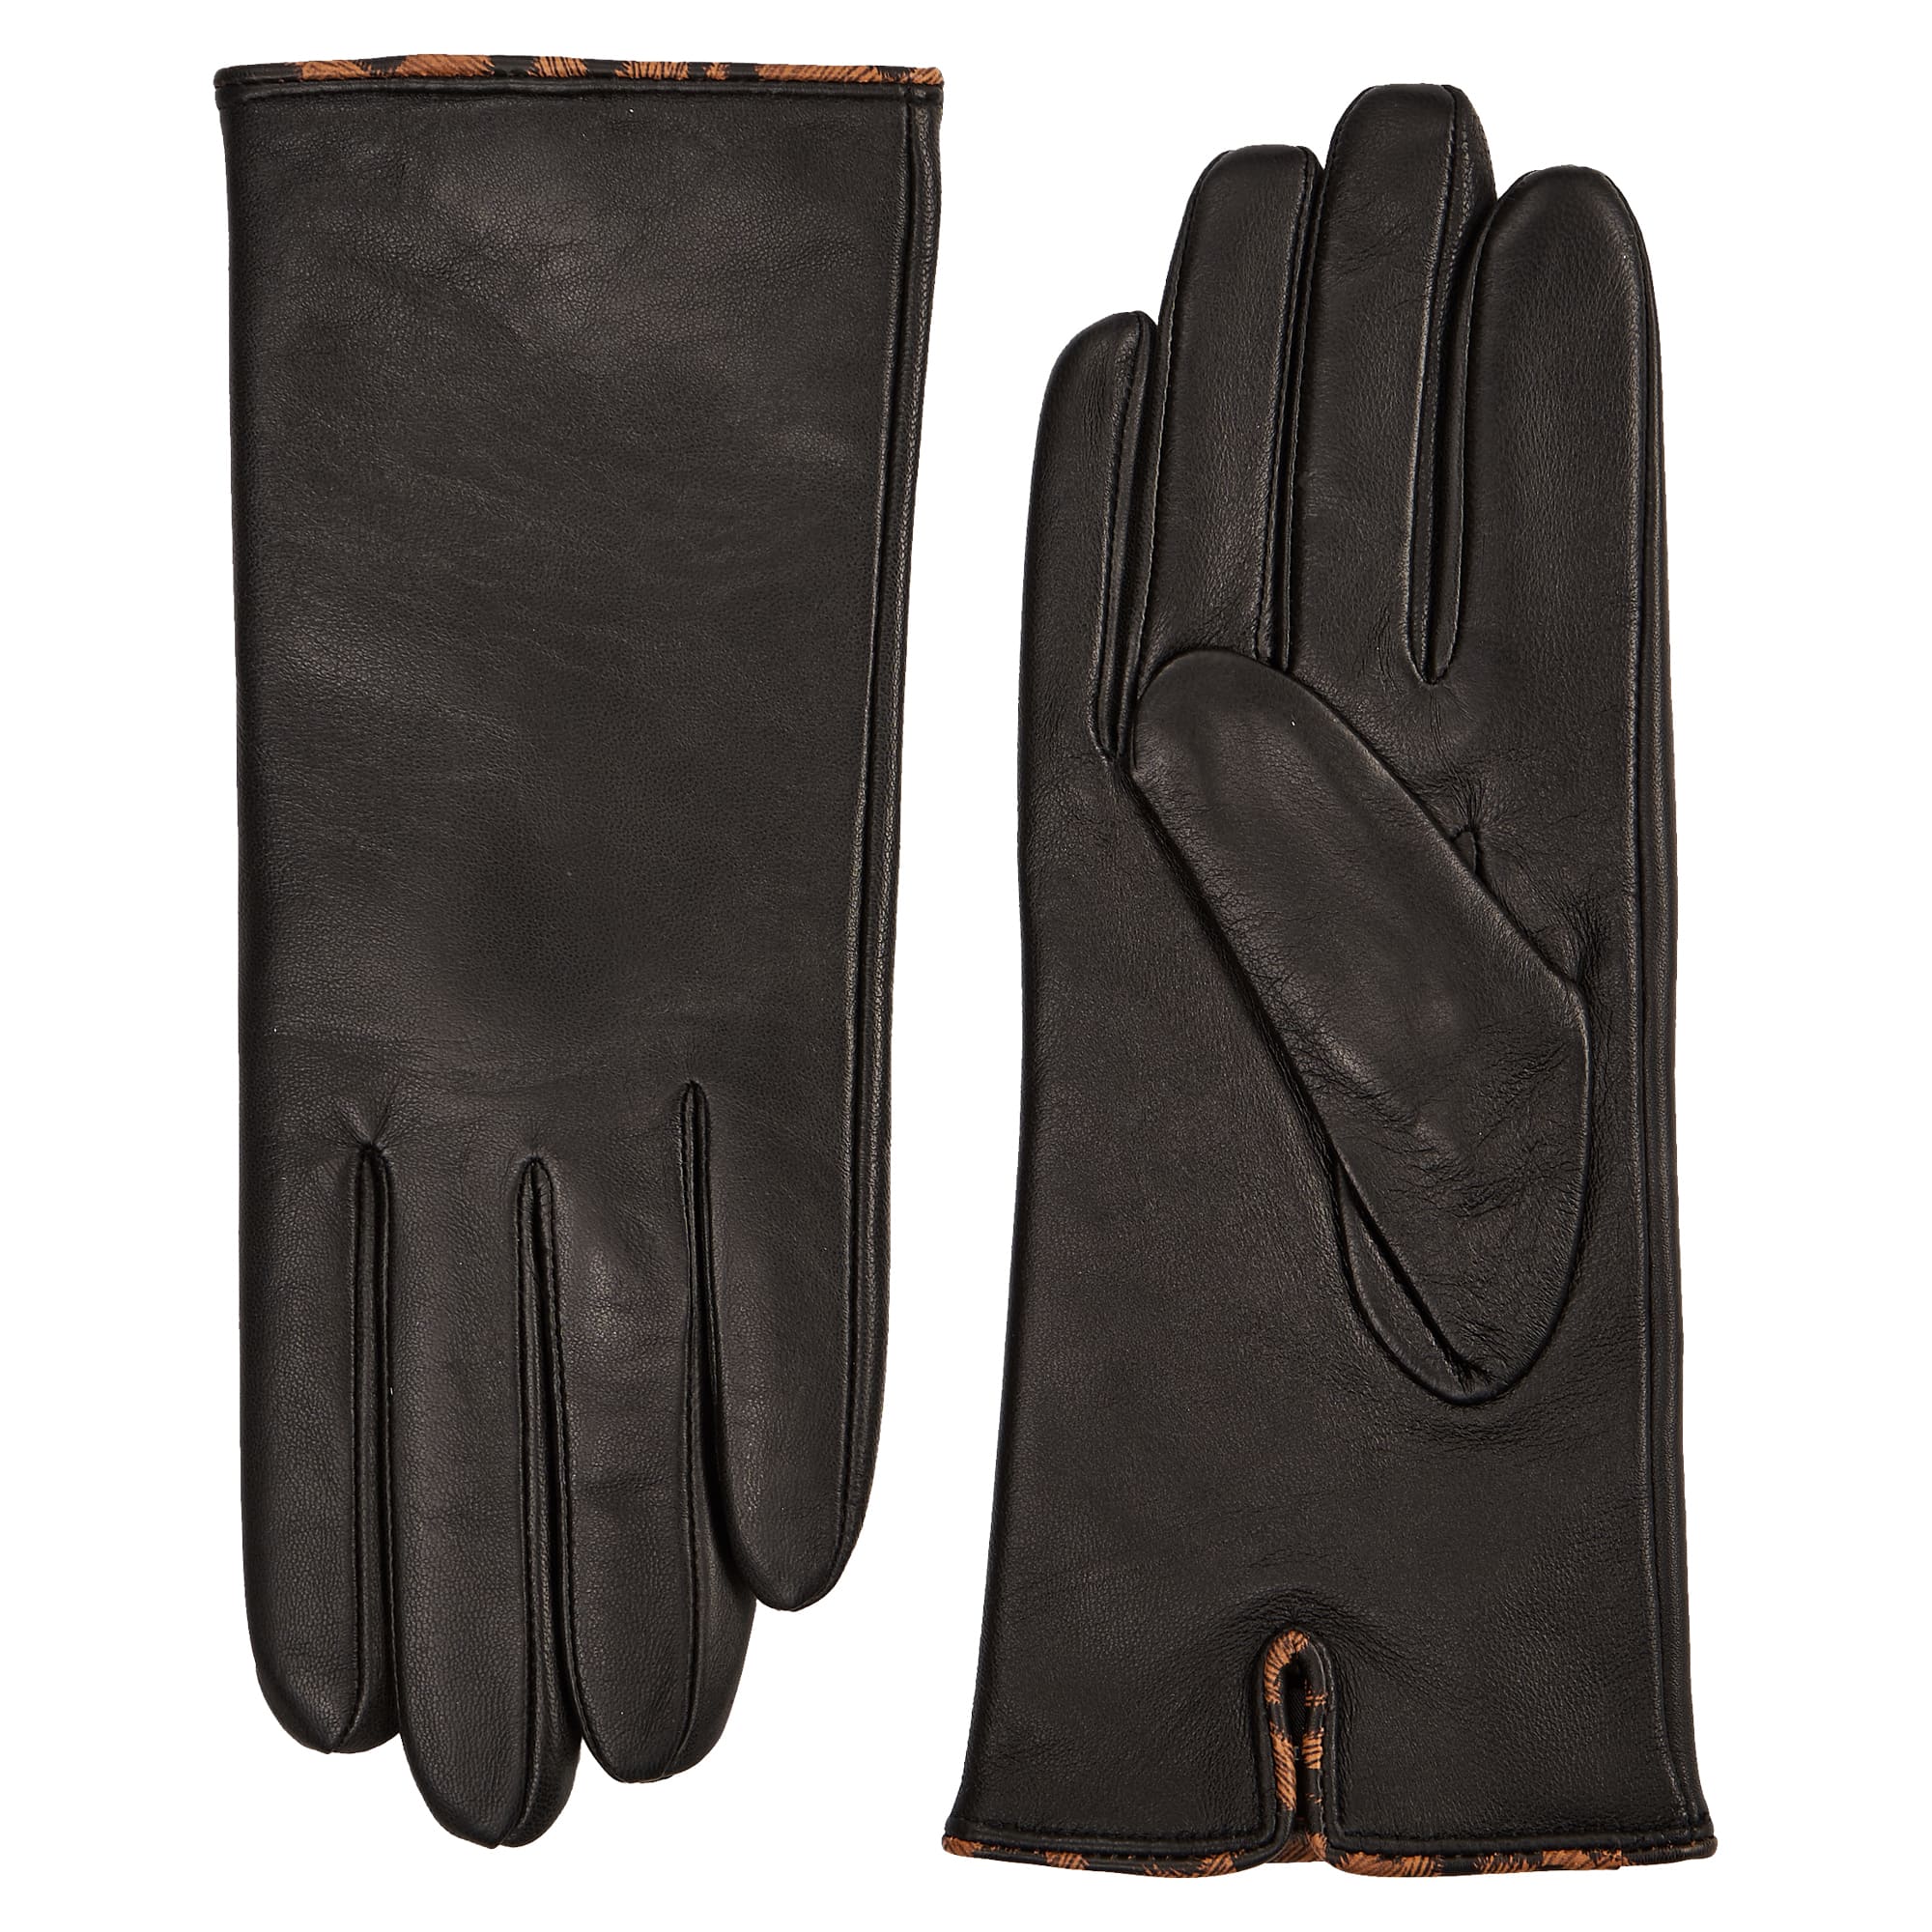 Др.Коффер H660147-236-04 перчатки женские touch (8), размер 8, цвет черный - фото 1